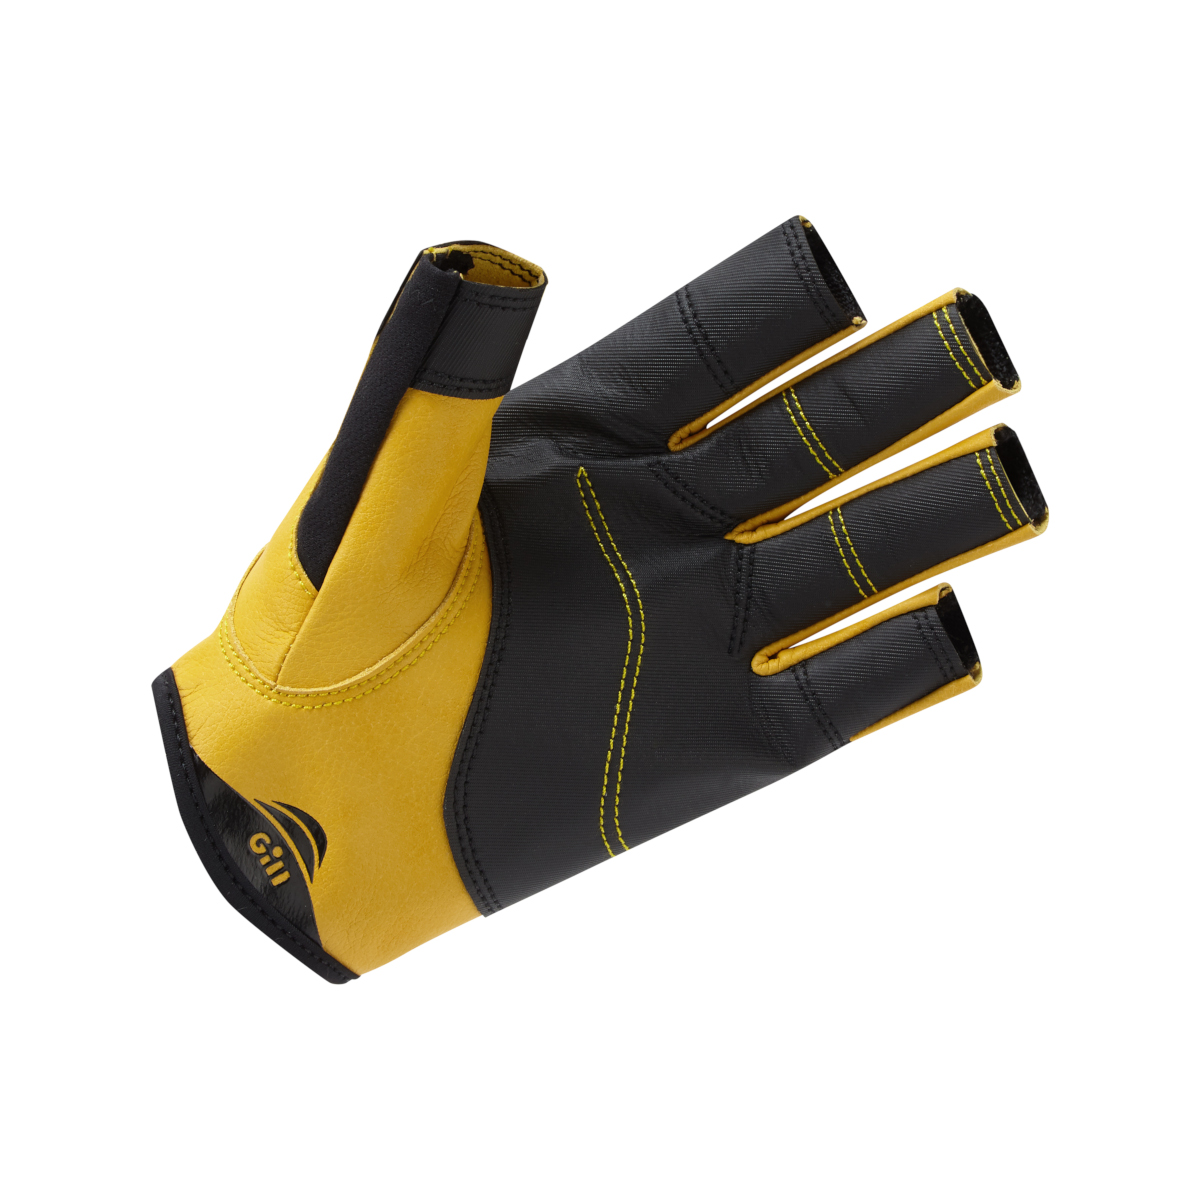 Gill Pro gants de voile à doigts courts - noir, taille XL